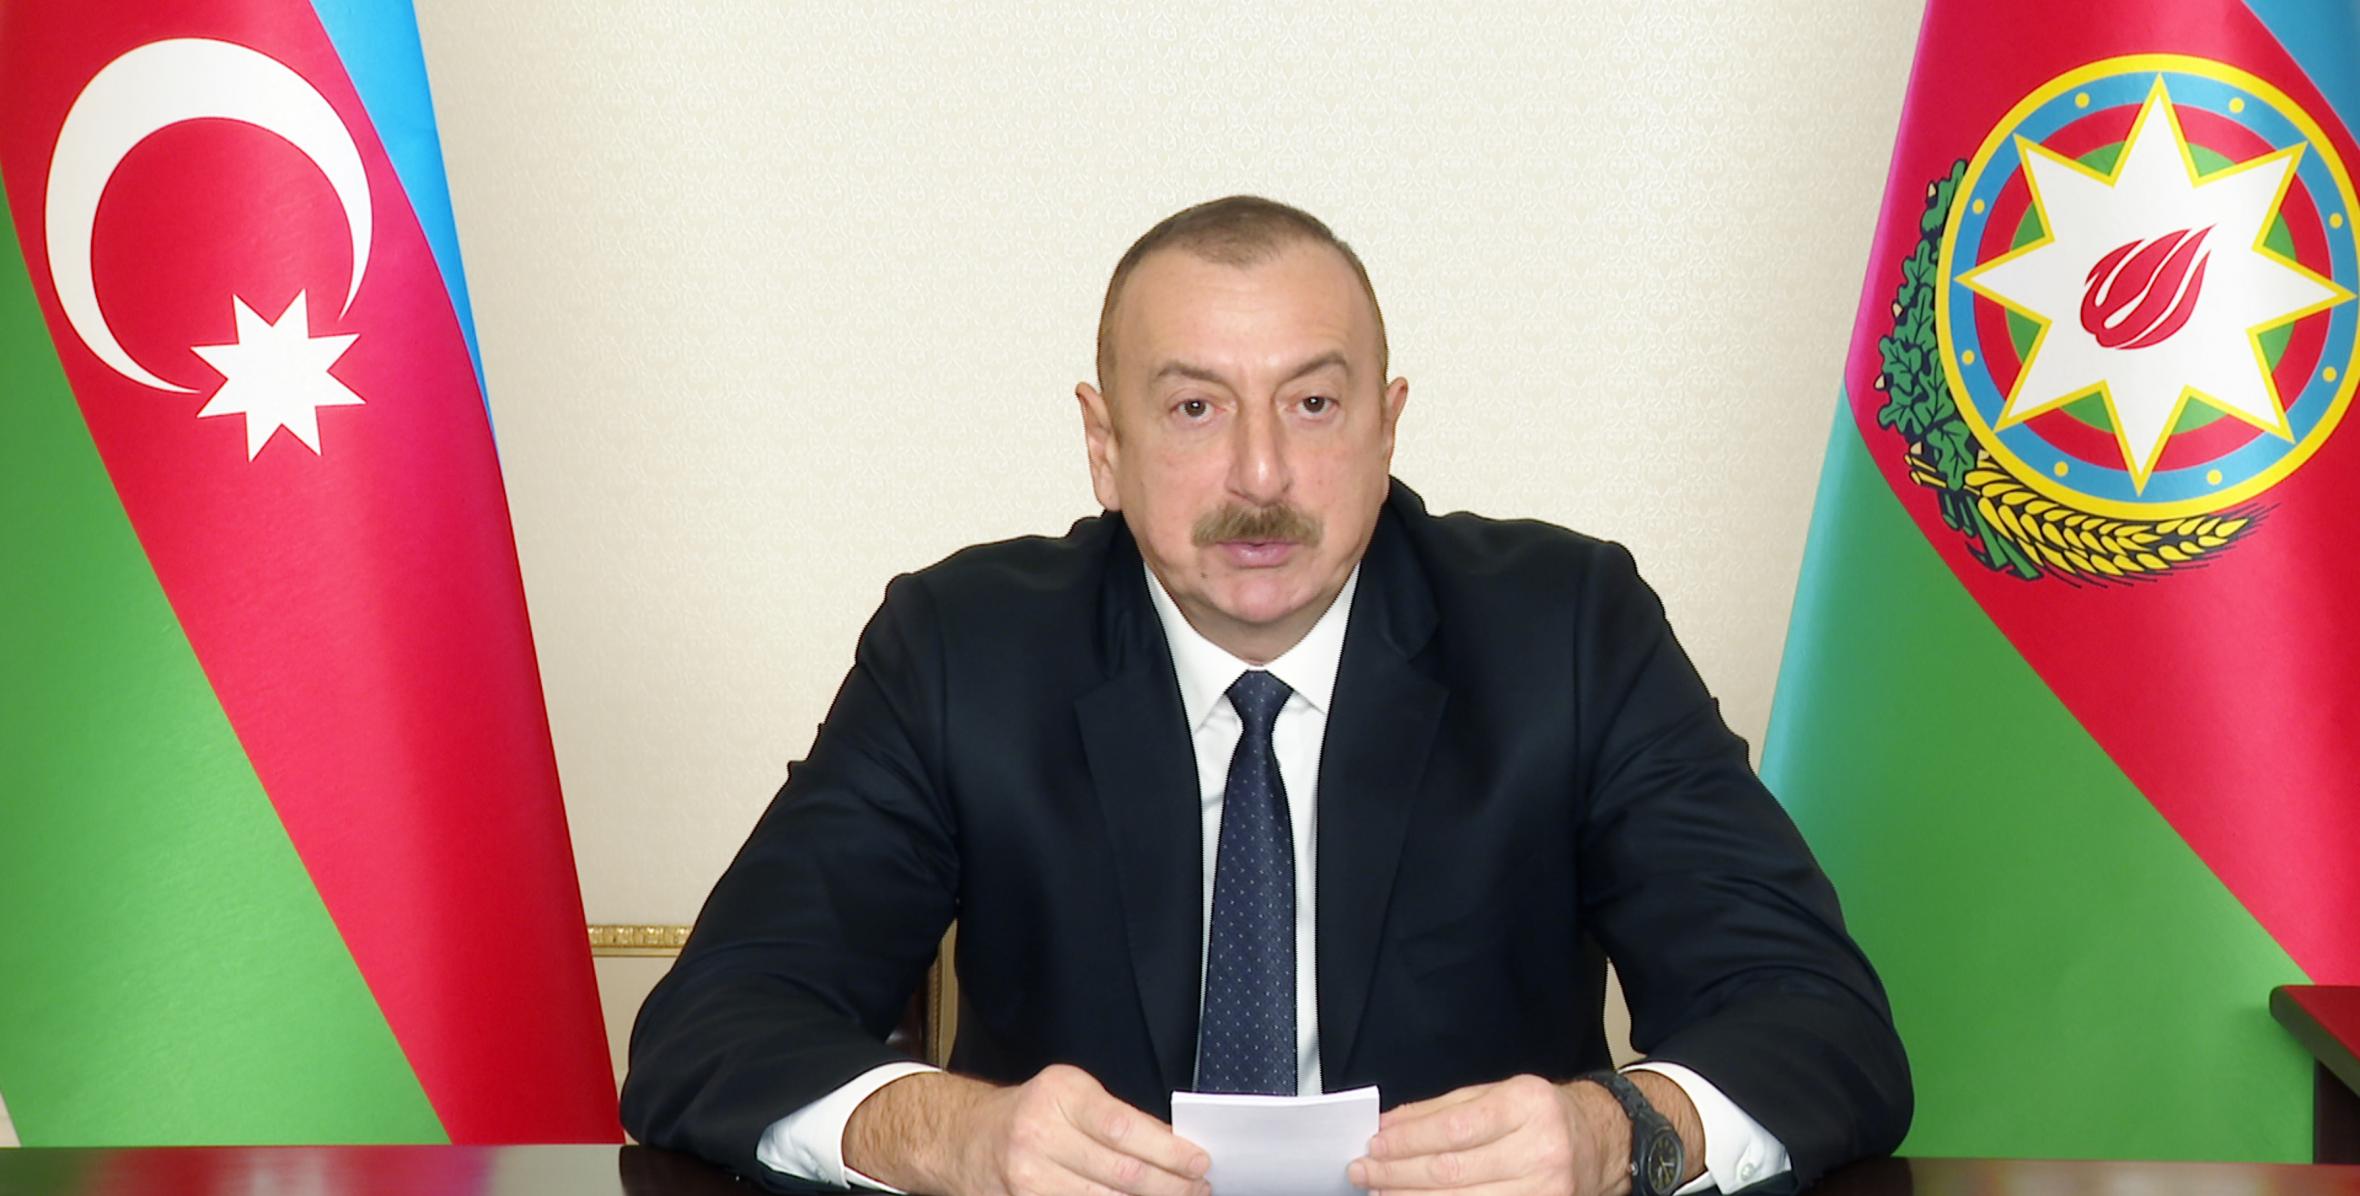 Ильхам Алиев принял участие в заседании Совета глав государств СНГ в формате видеоконференции